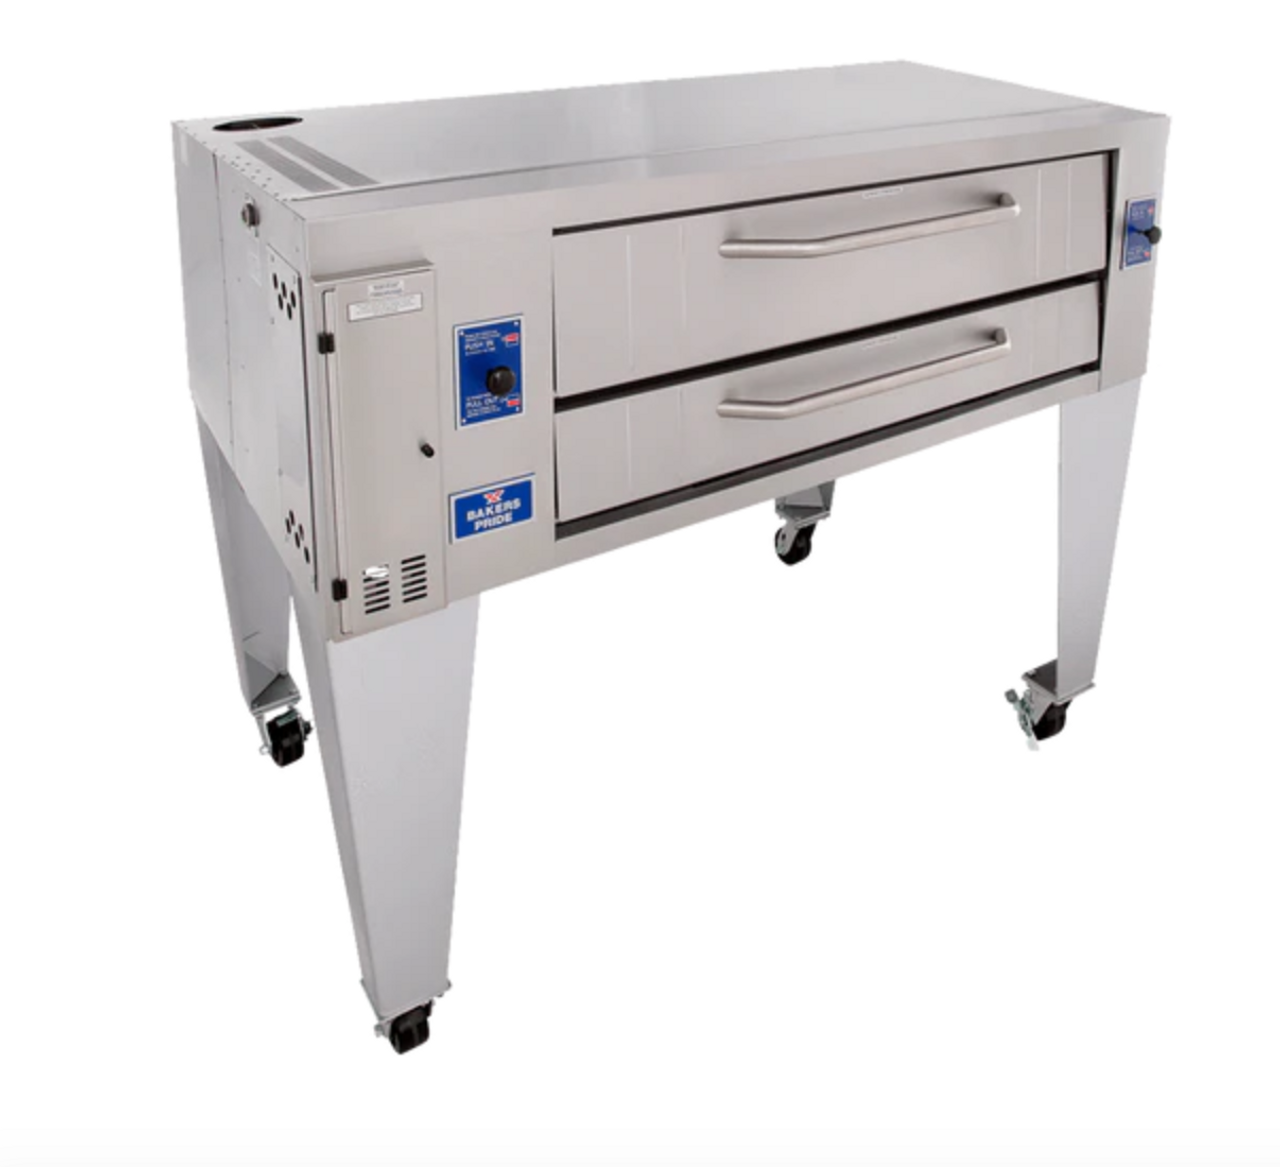 BUY | SHOP | Super Deck Y Series Single Deck Pizza Oven 60" - 120,000 BTU-Bakers Pride Y-600 S (Y600-BP)